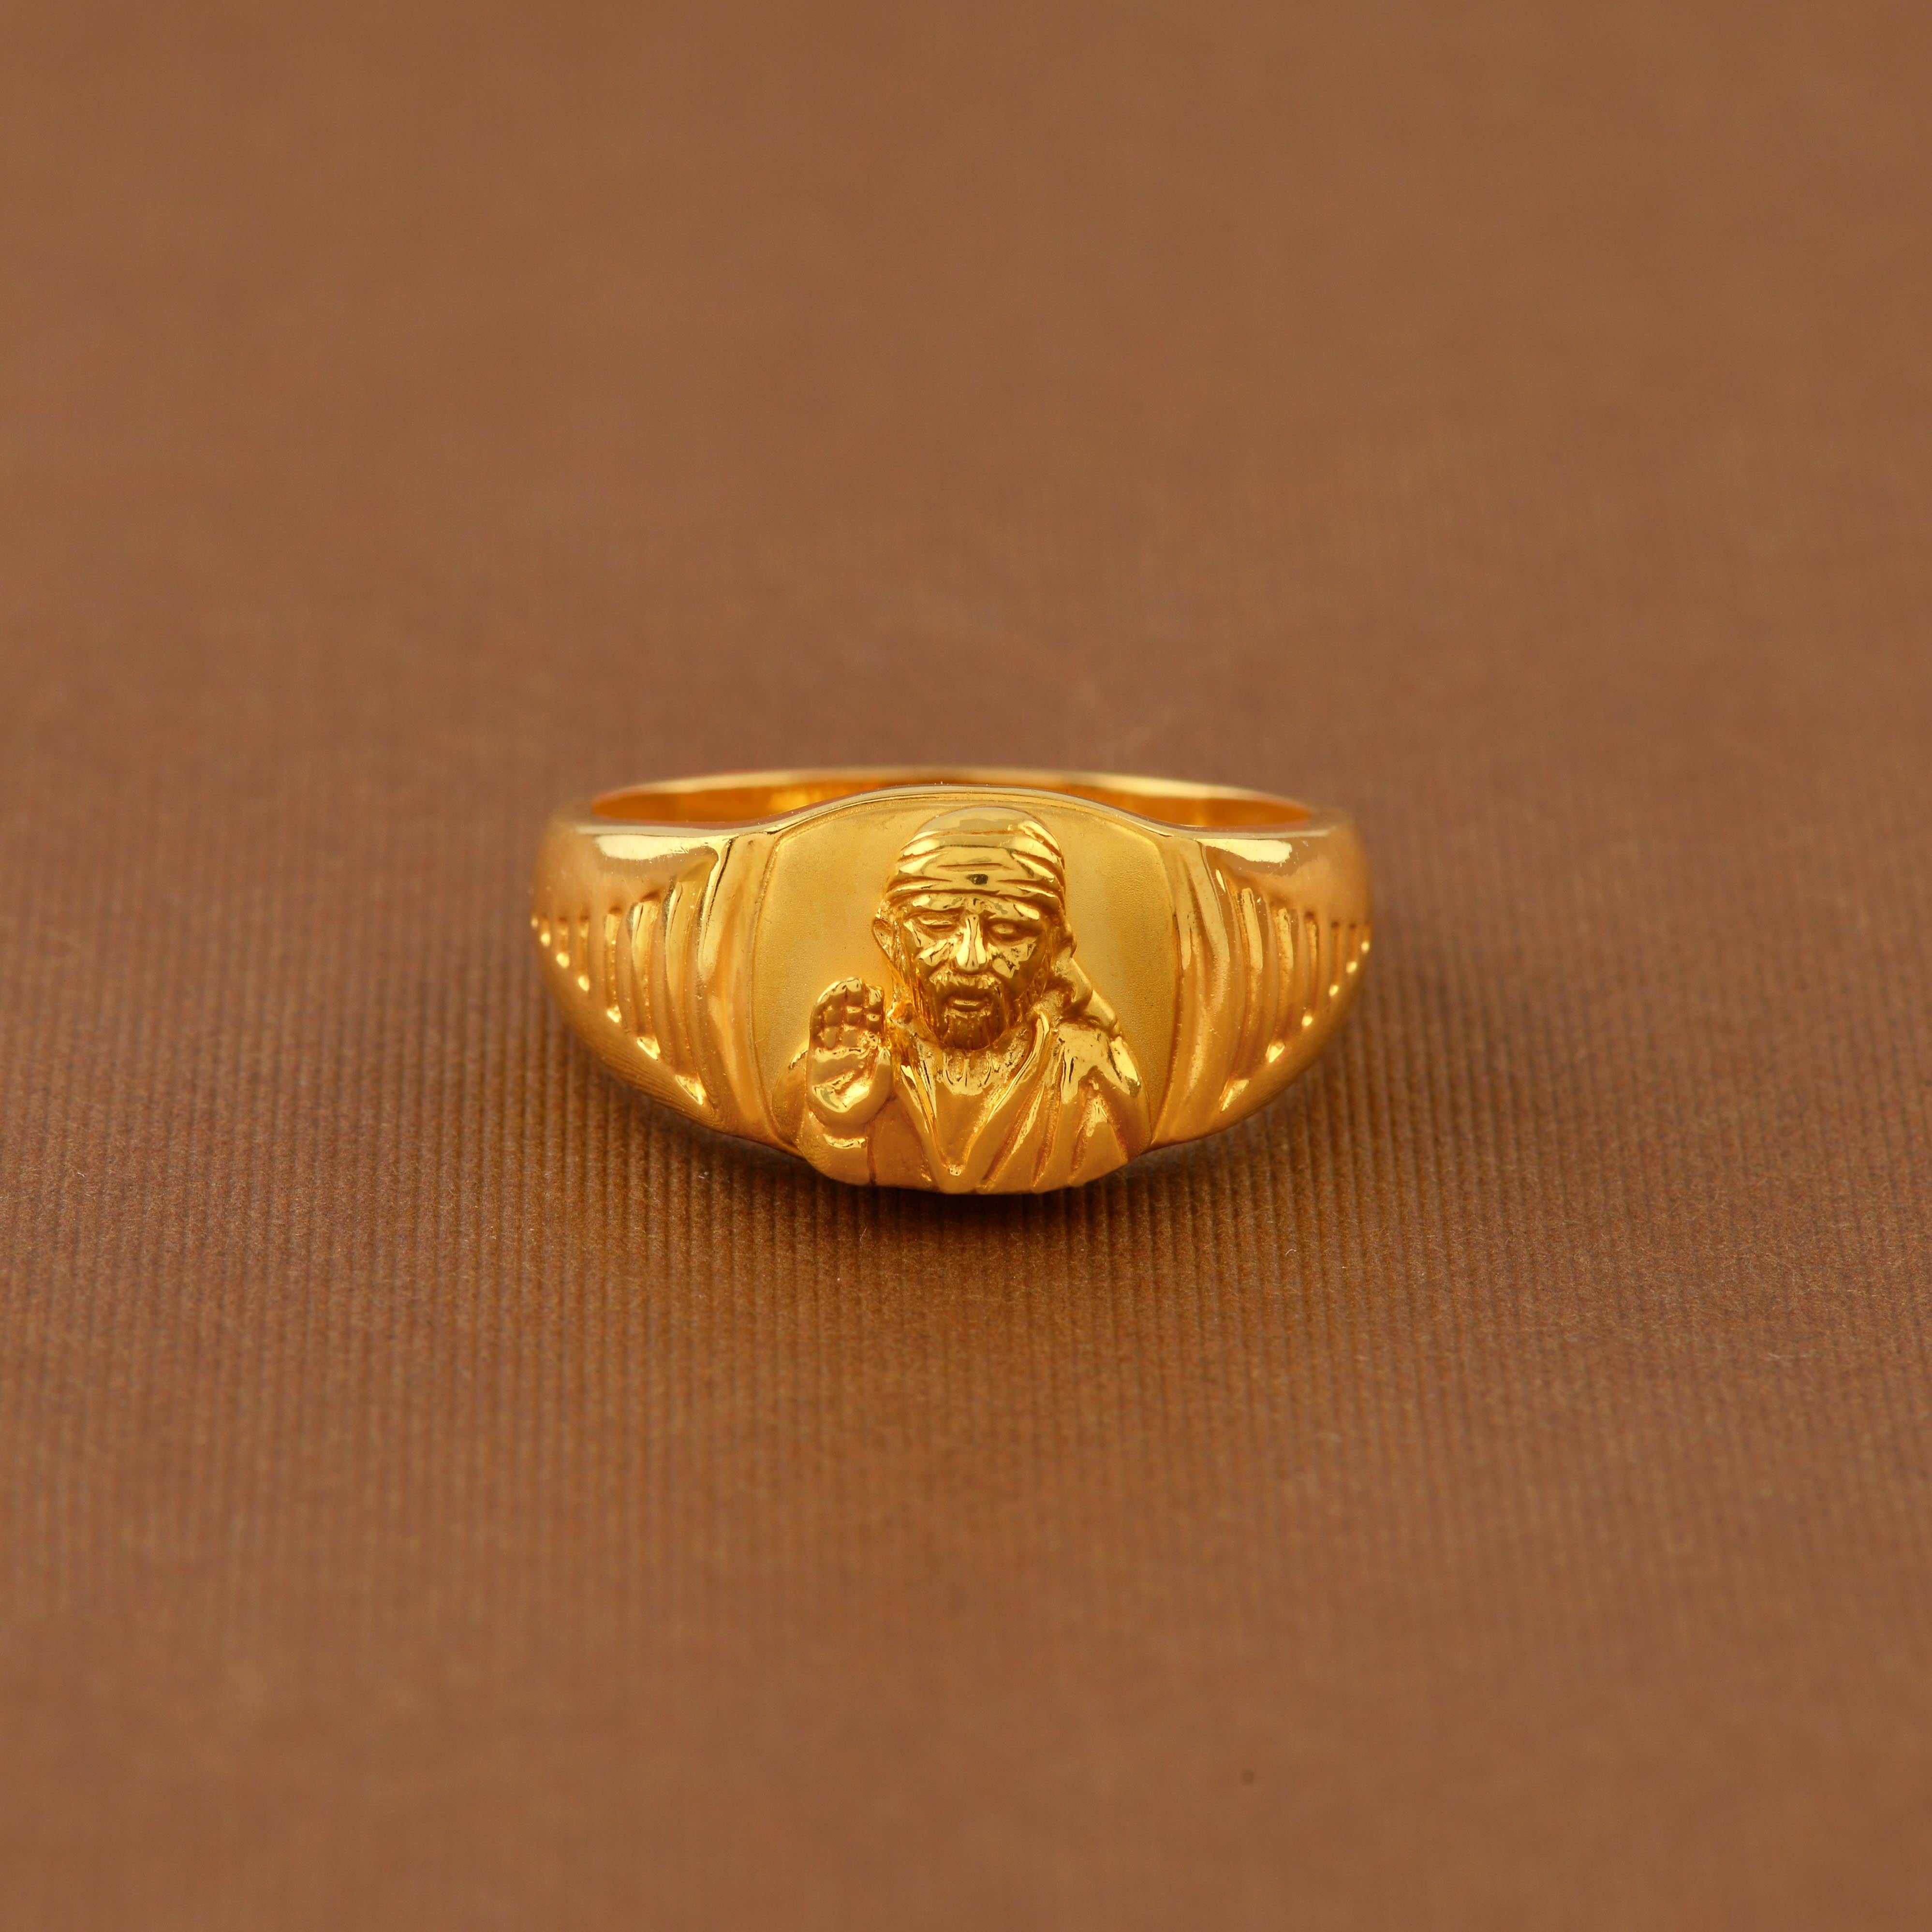 22K Gold 'Balaji' Ring with Cz & Color Stones For Men - 235-GR6777 in 5.800  Grams